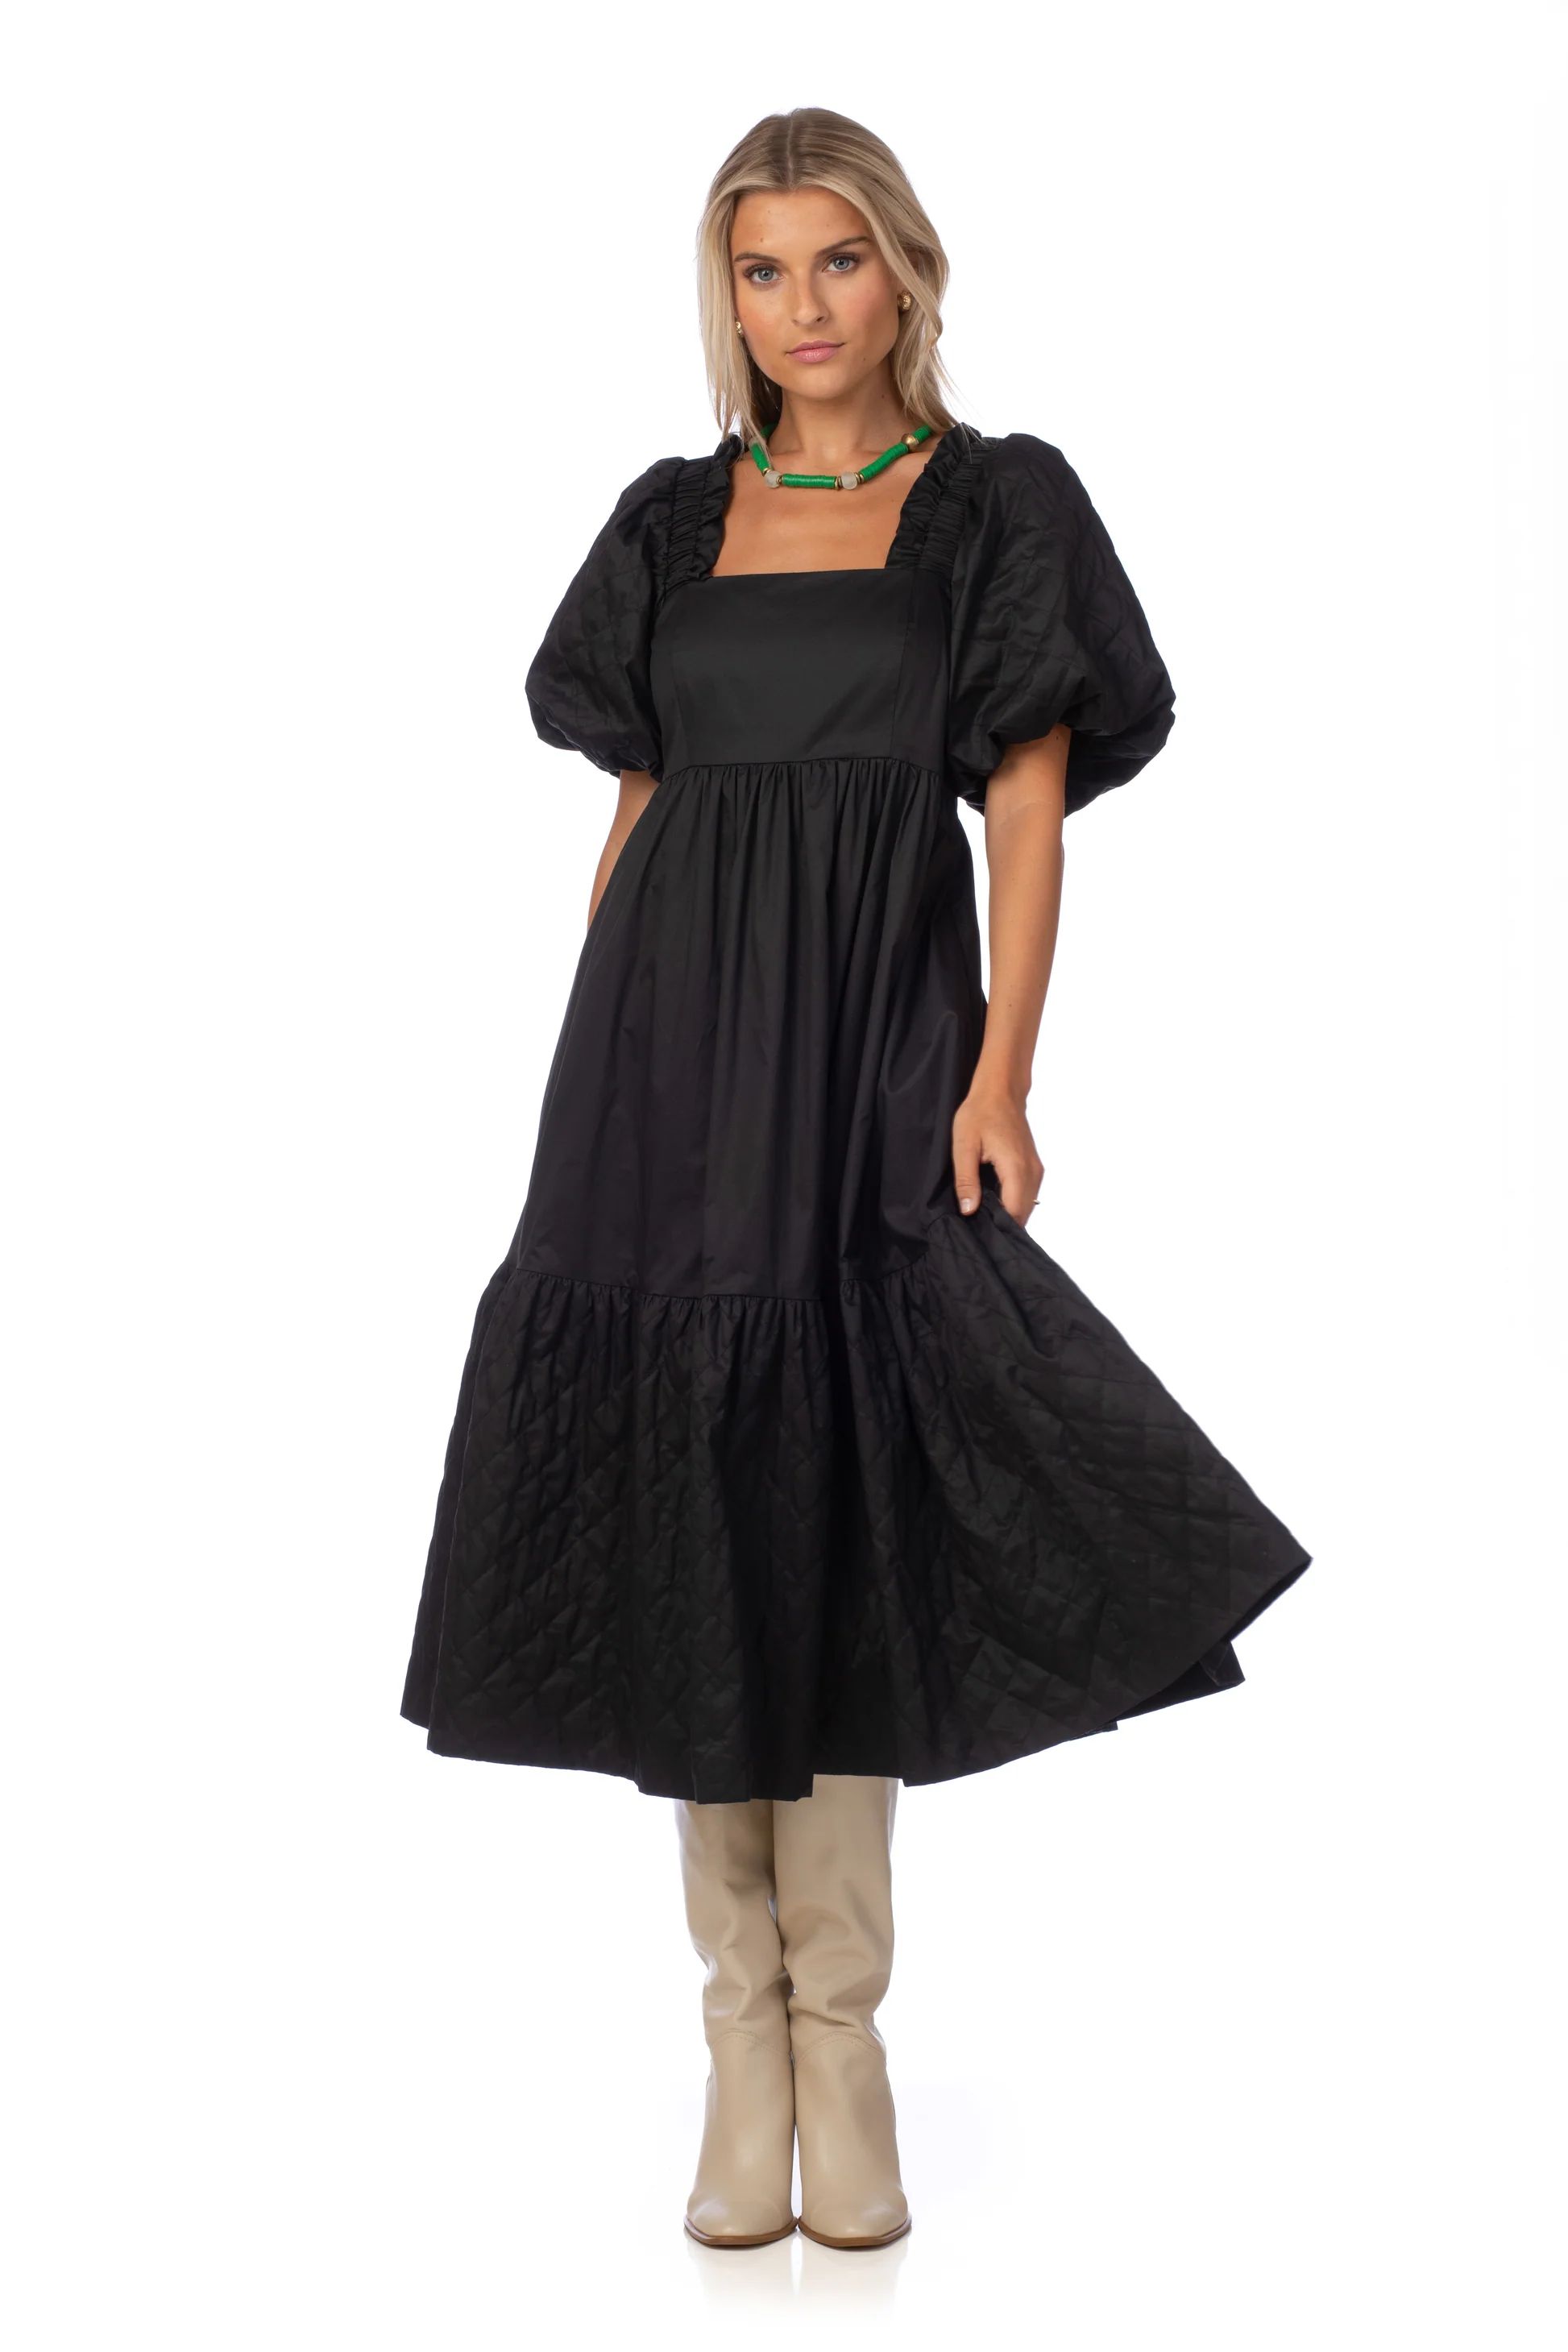 Marigold Dress in Black - CROSBY by Mollie Burch | CROSBY by Mollie Burch